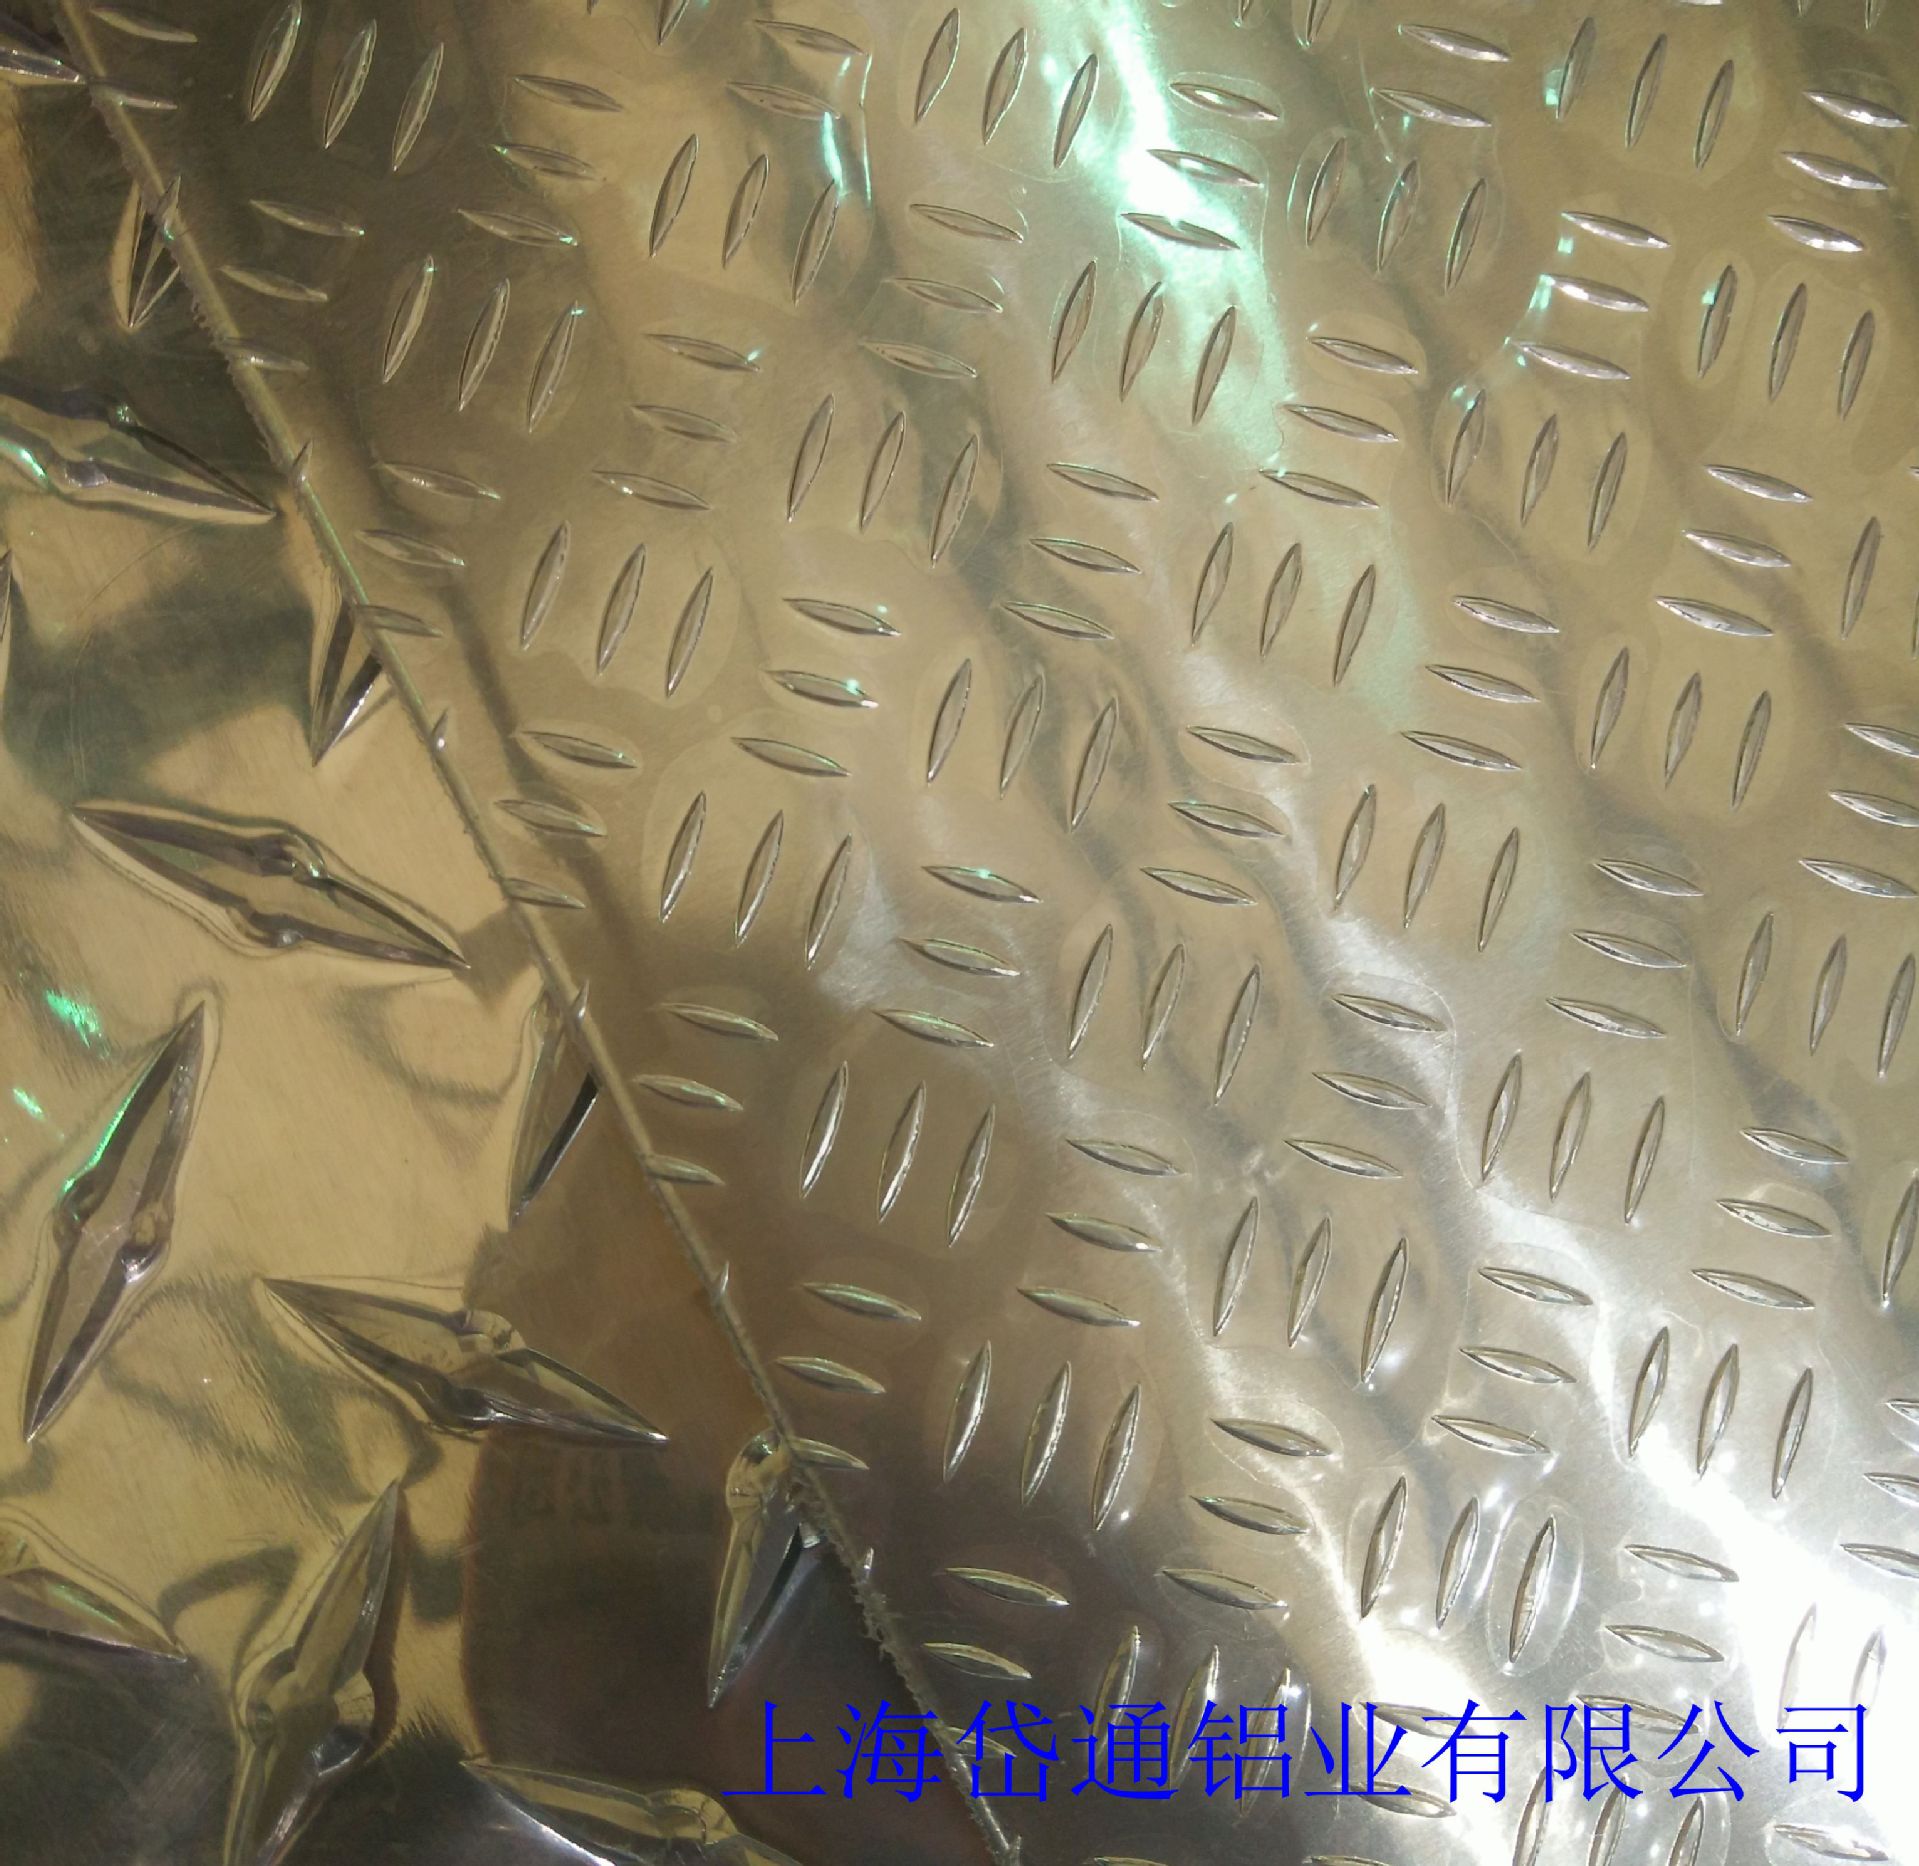 6.18合金花纹防滑板 防腐蚀条纹 防滑合金板价格通用 铝材示例图7